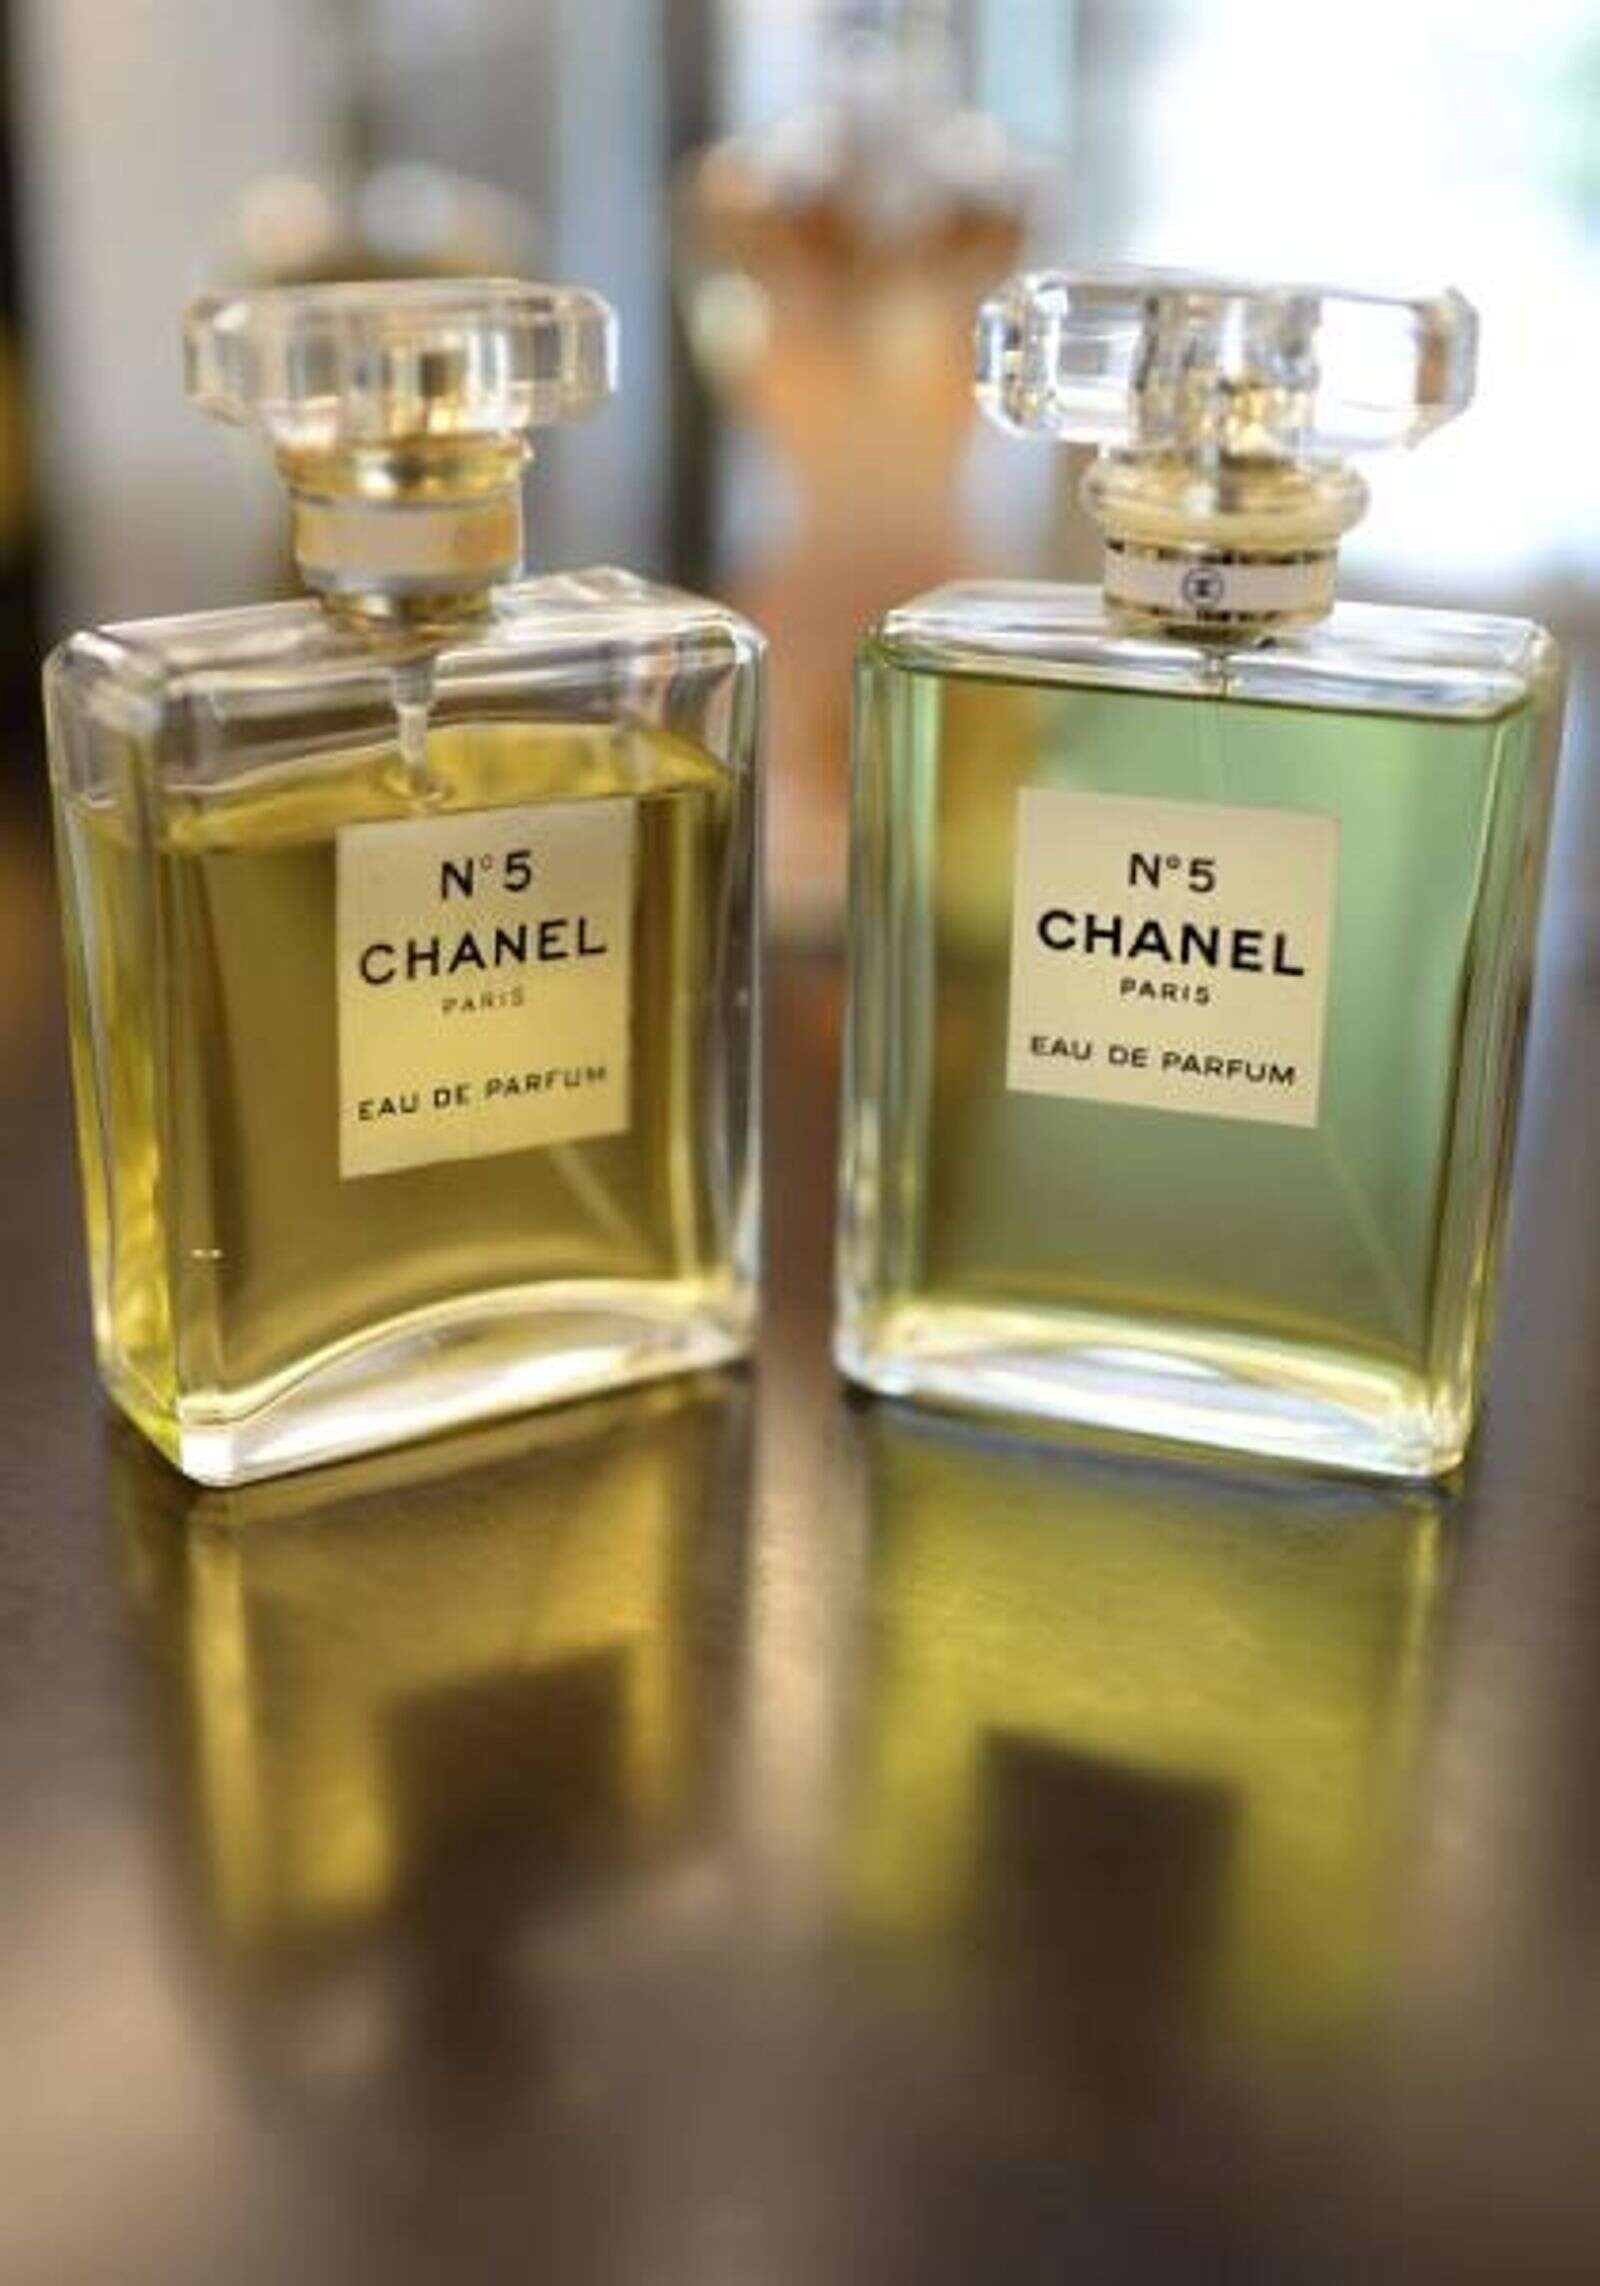 Mítico perfume Chanel Nº5 celebra su centenario – NotiCel – La